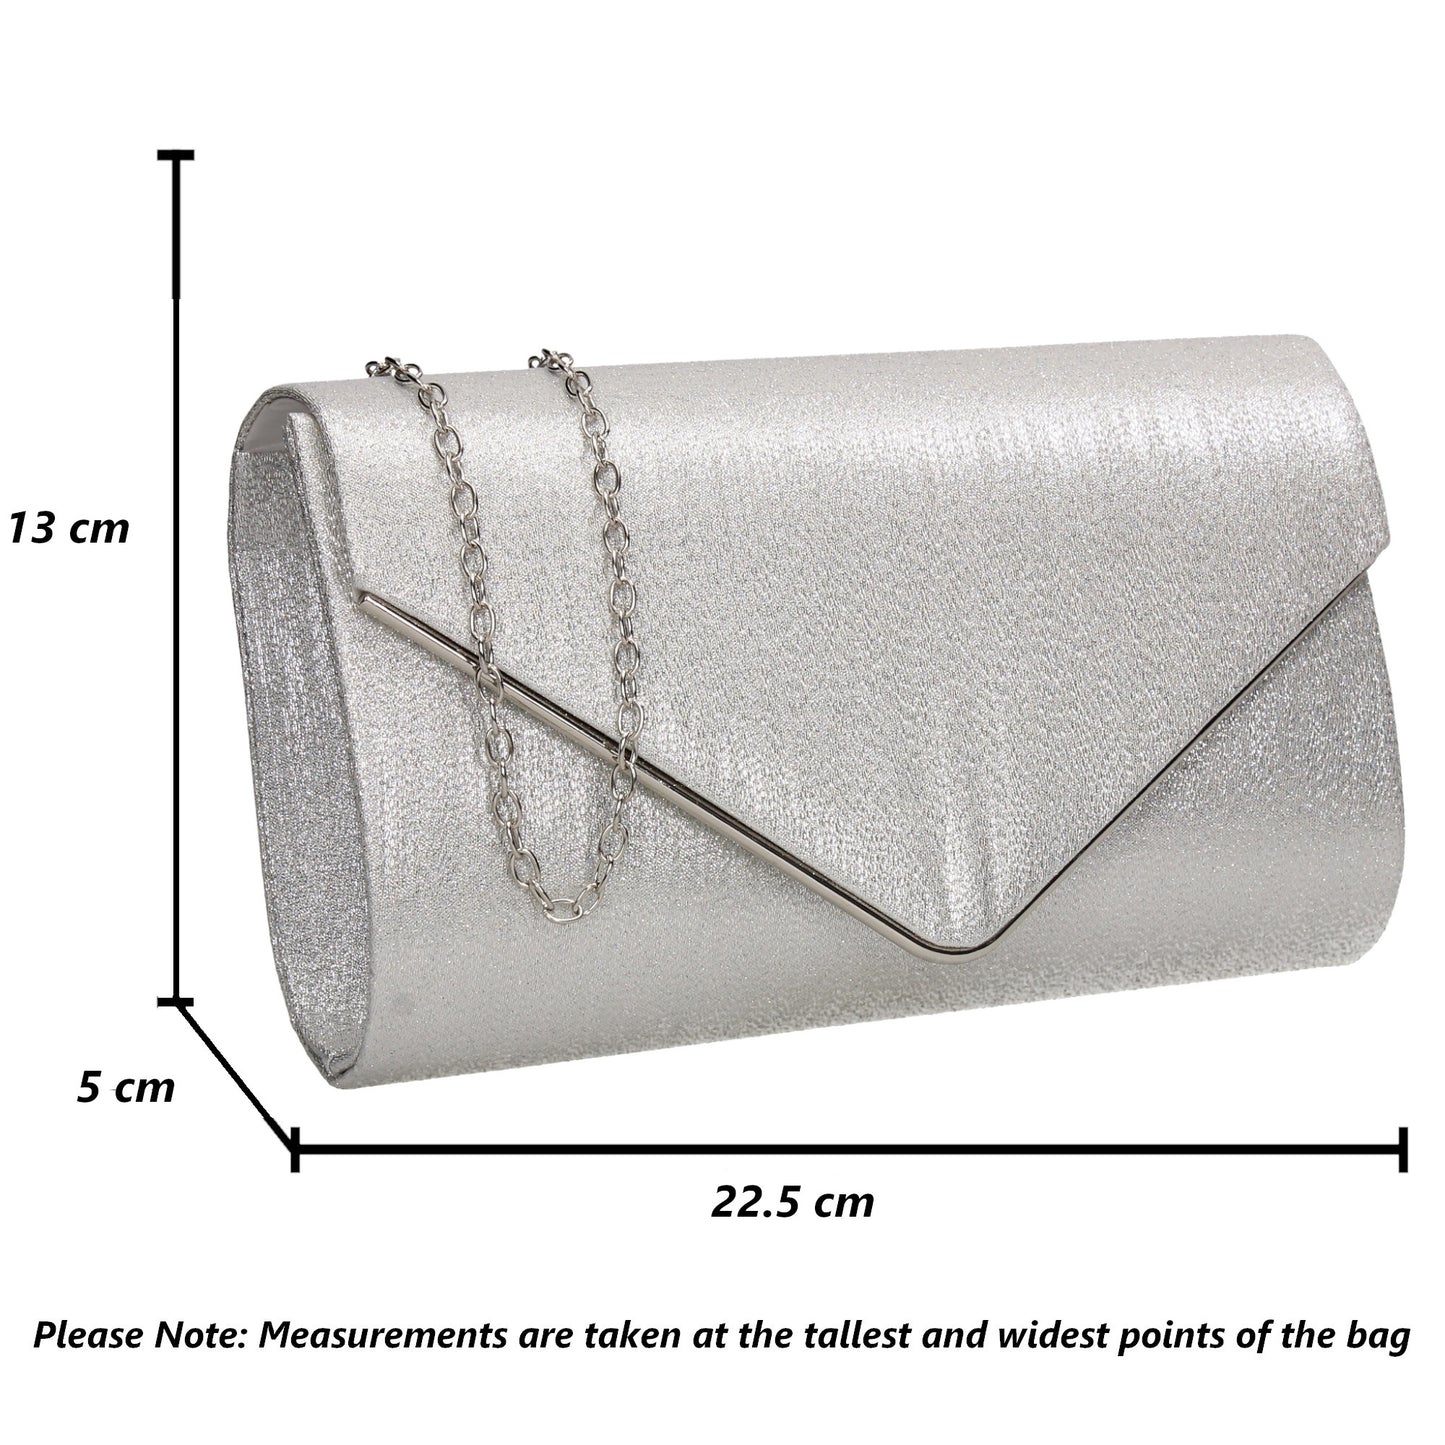 SWANKYSWANS Maya Clutch Bag Silver Cute Cheap Clutch Bag For Weddings School and Work